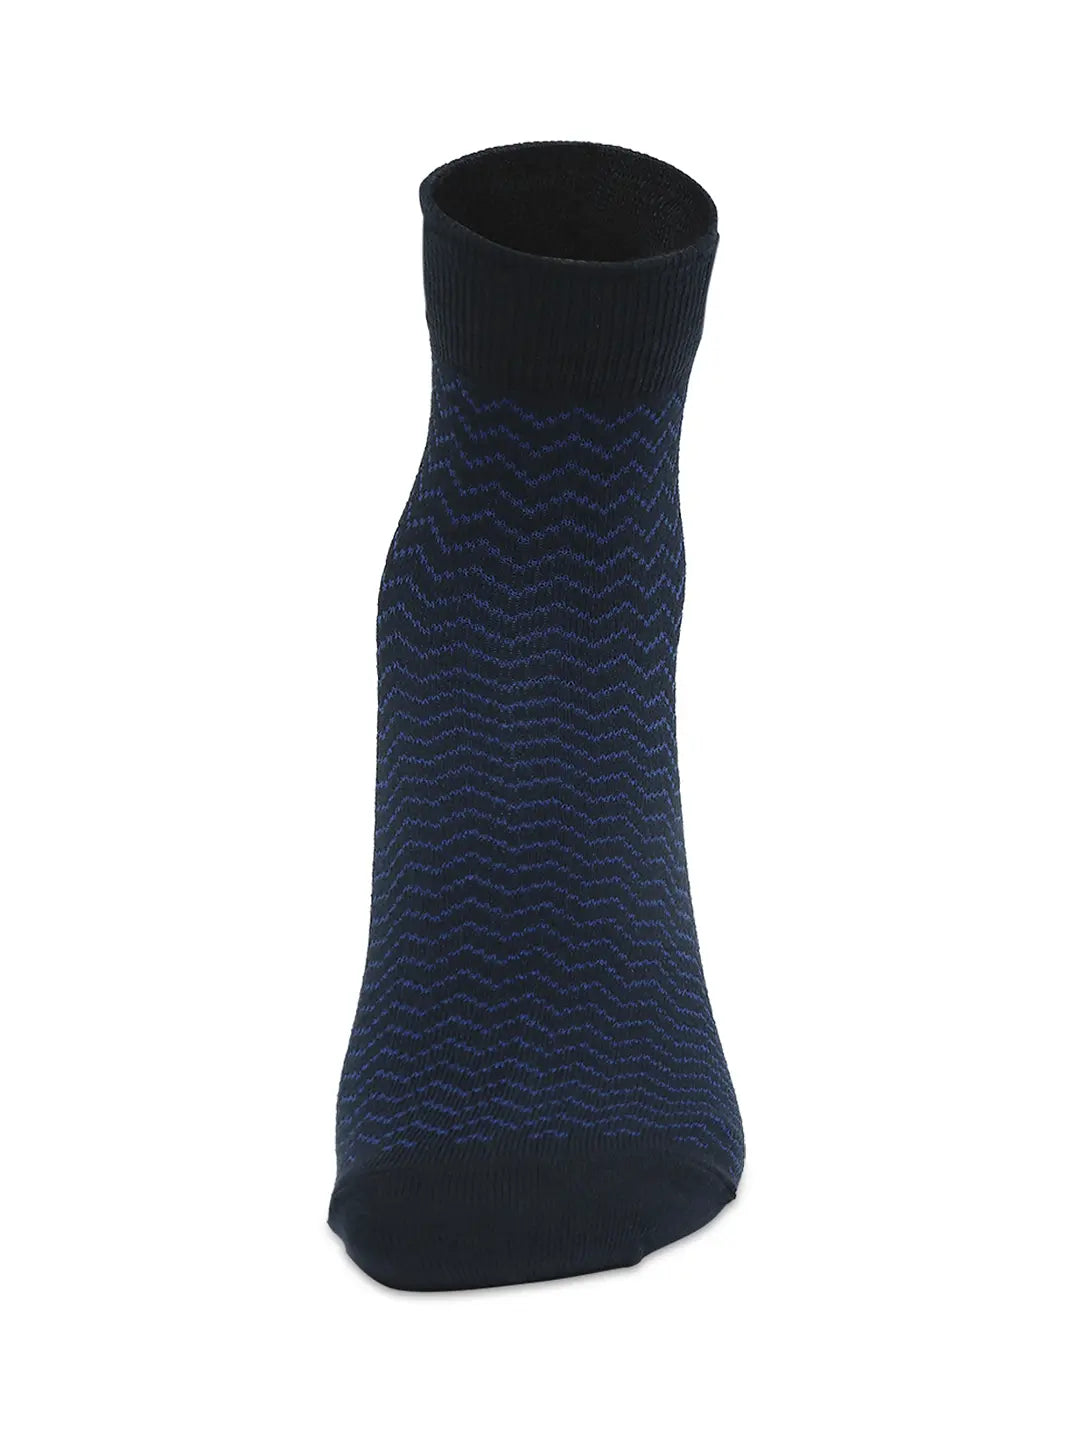 Men Premium Navy & Khaki Ankle Length Socks - Pack Of 2- Underjeans by Spykar